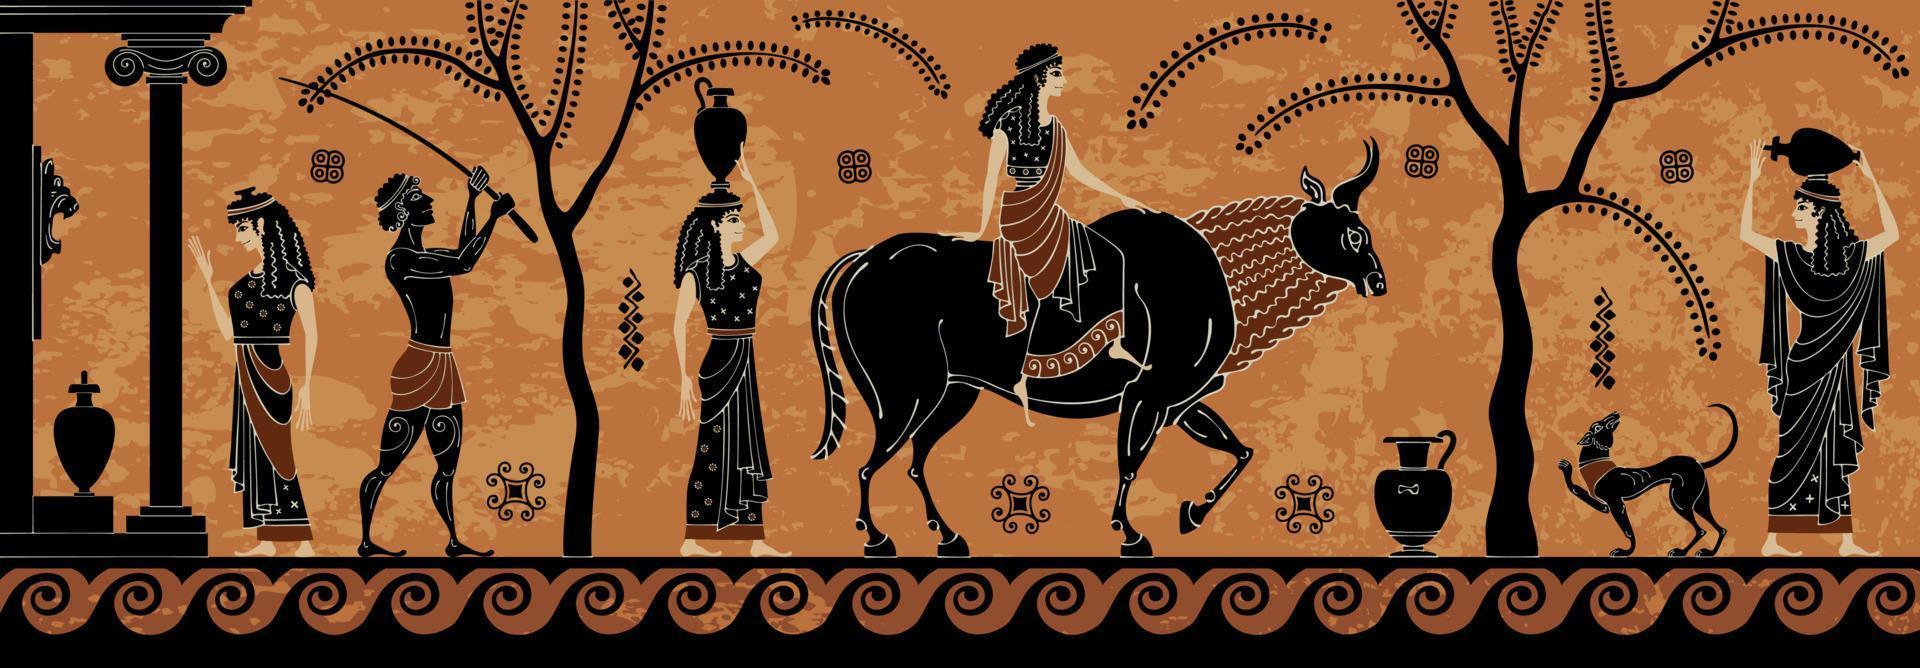 escena del mito antiguo, cerámica de figuras negras. rapto de europa. zeus. vector